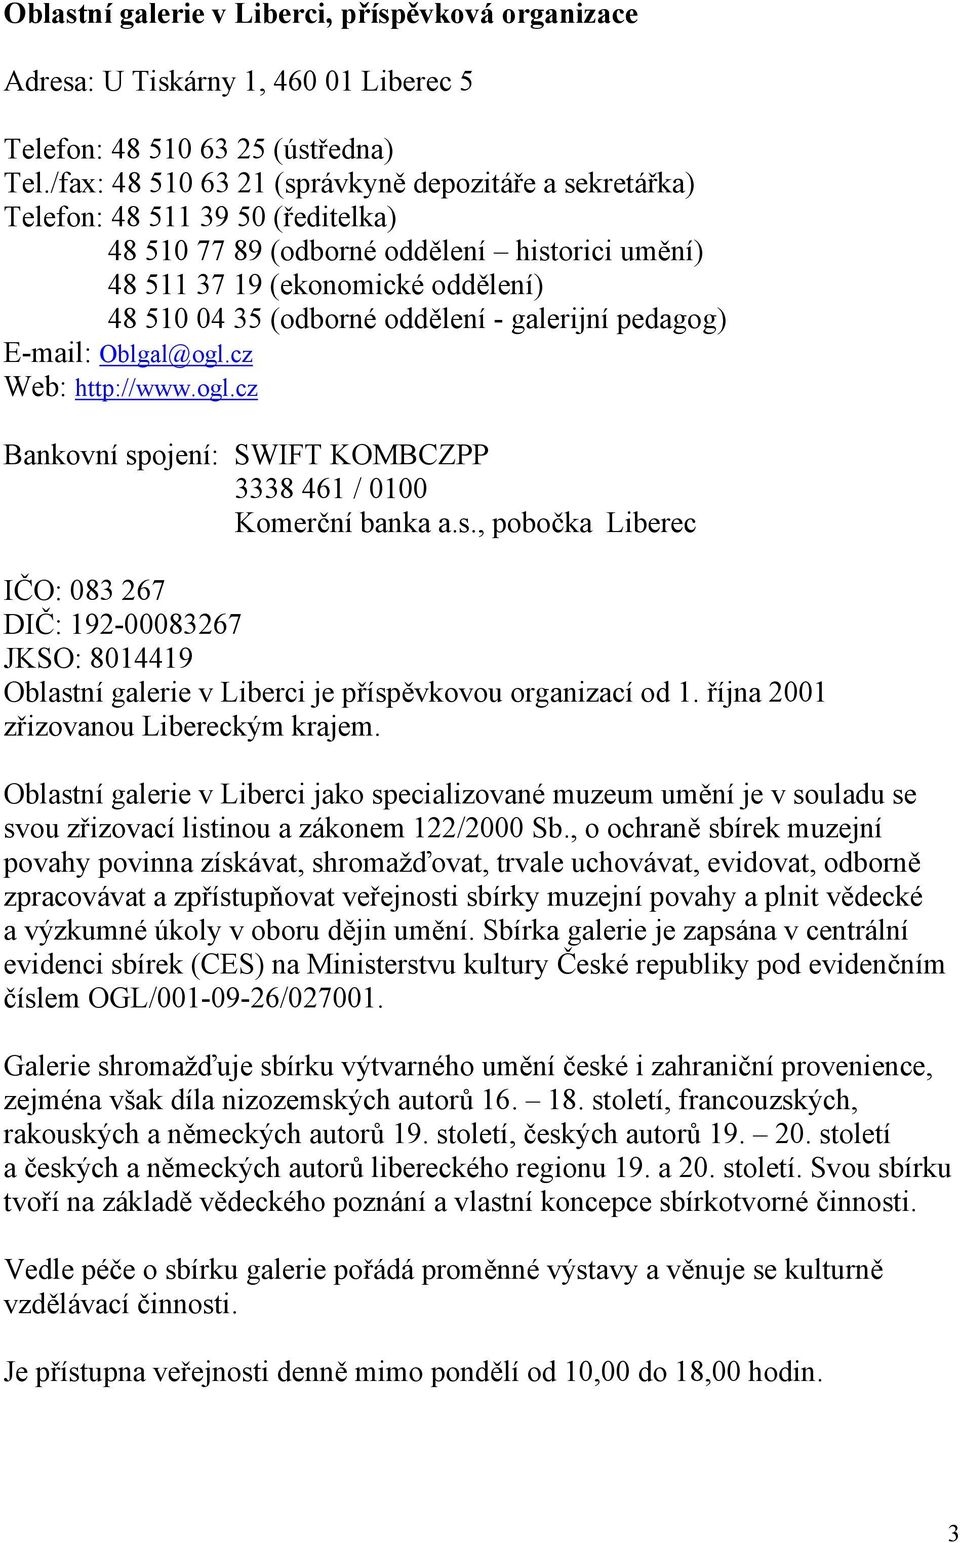 oddělení - galerijní pedagog) E-mail: Oblgal@ogl.cz Web: http://www.ogl.cz Bankovní sp